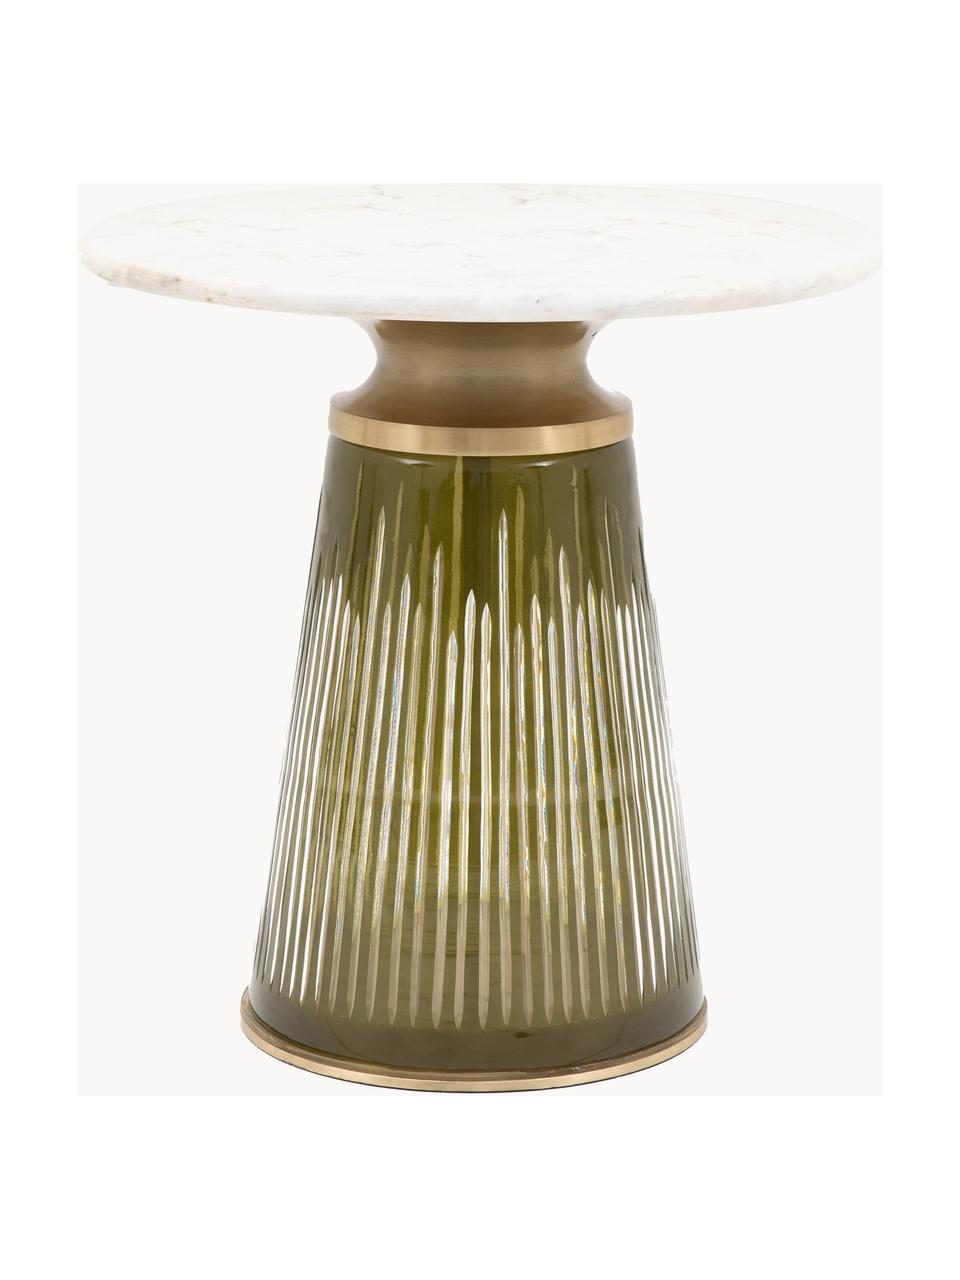 Mundgeblasener Glas-Beistelltisch Seville mit Marmor-Tischplatte, rund, Tischplatte: Marmor, Gestell: Glas, Aluminium, beschich, Olivgrün, Weiß, marmoriert, Ø 46 x H 46 cm